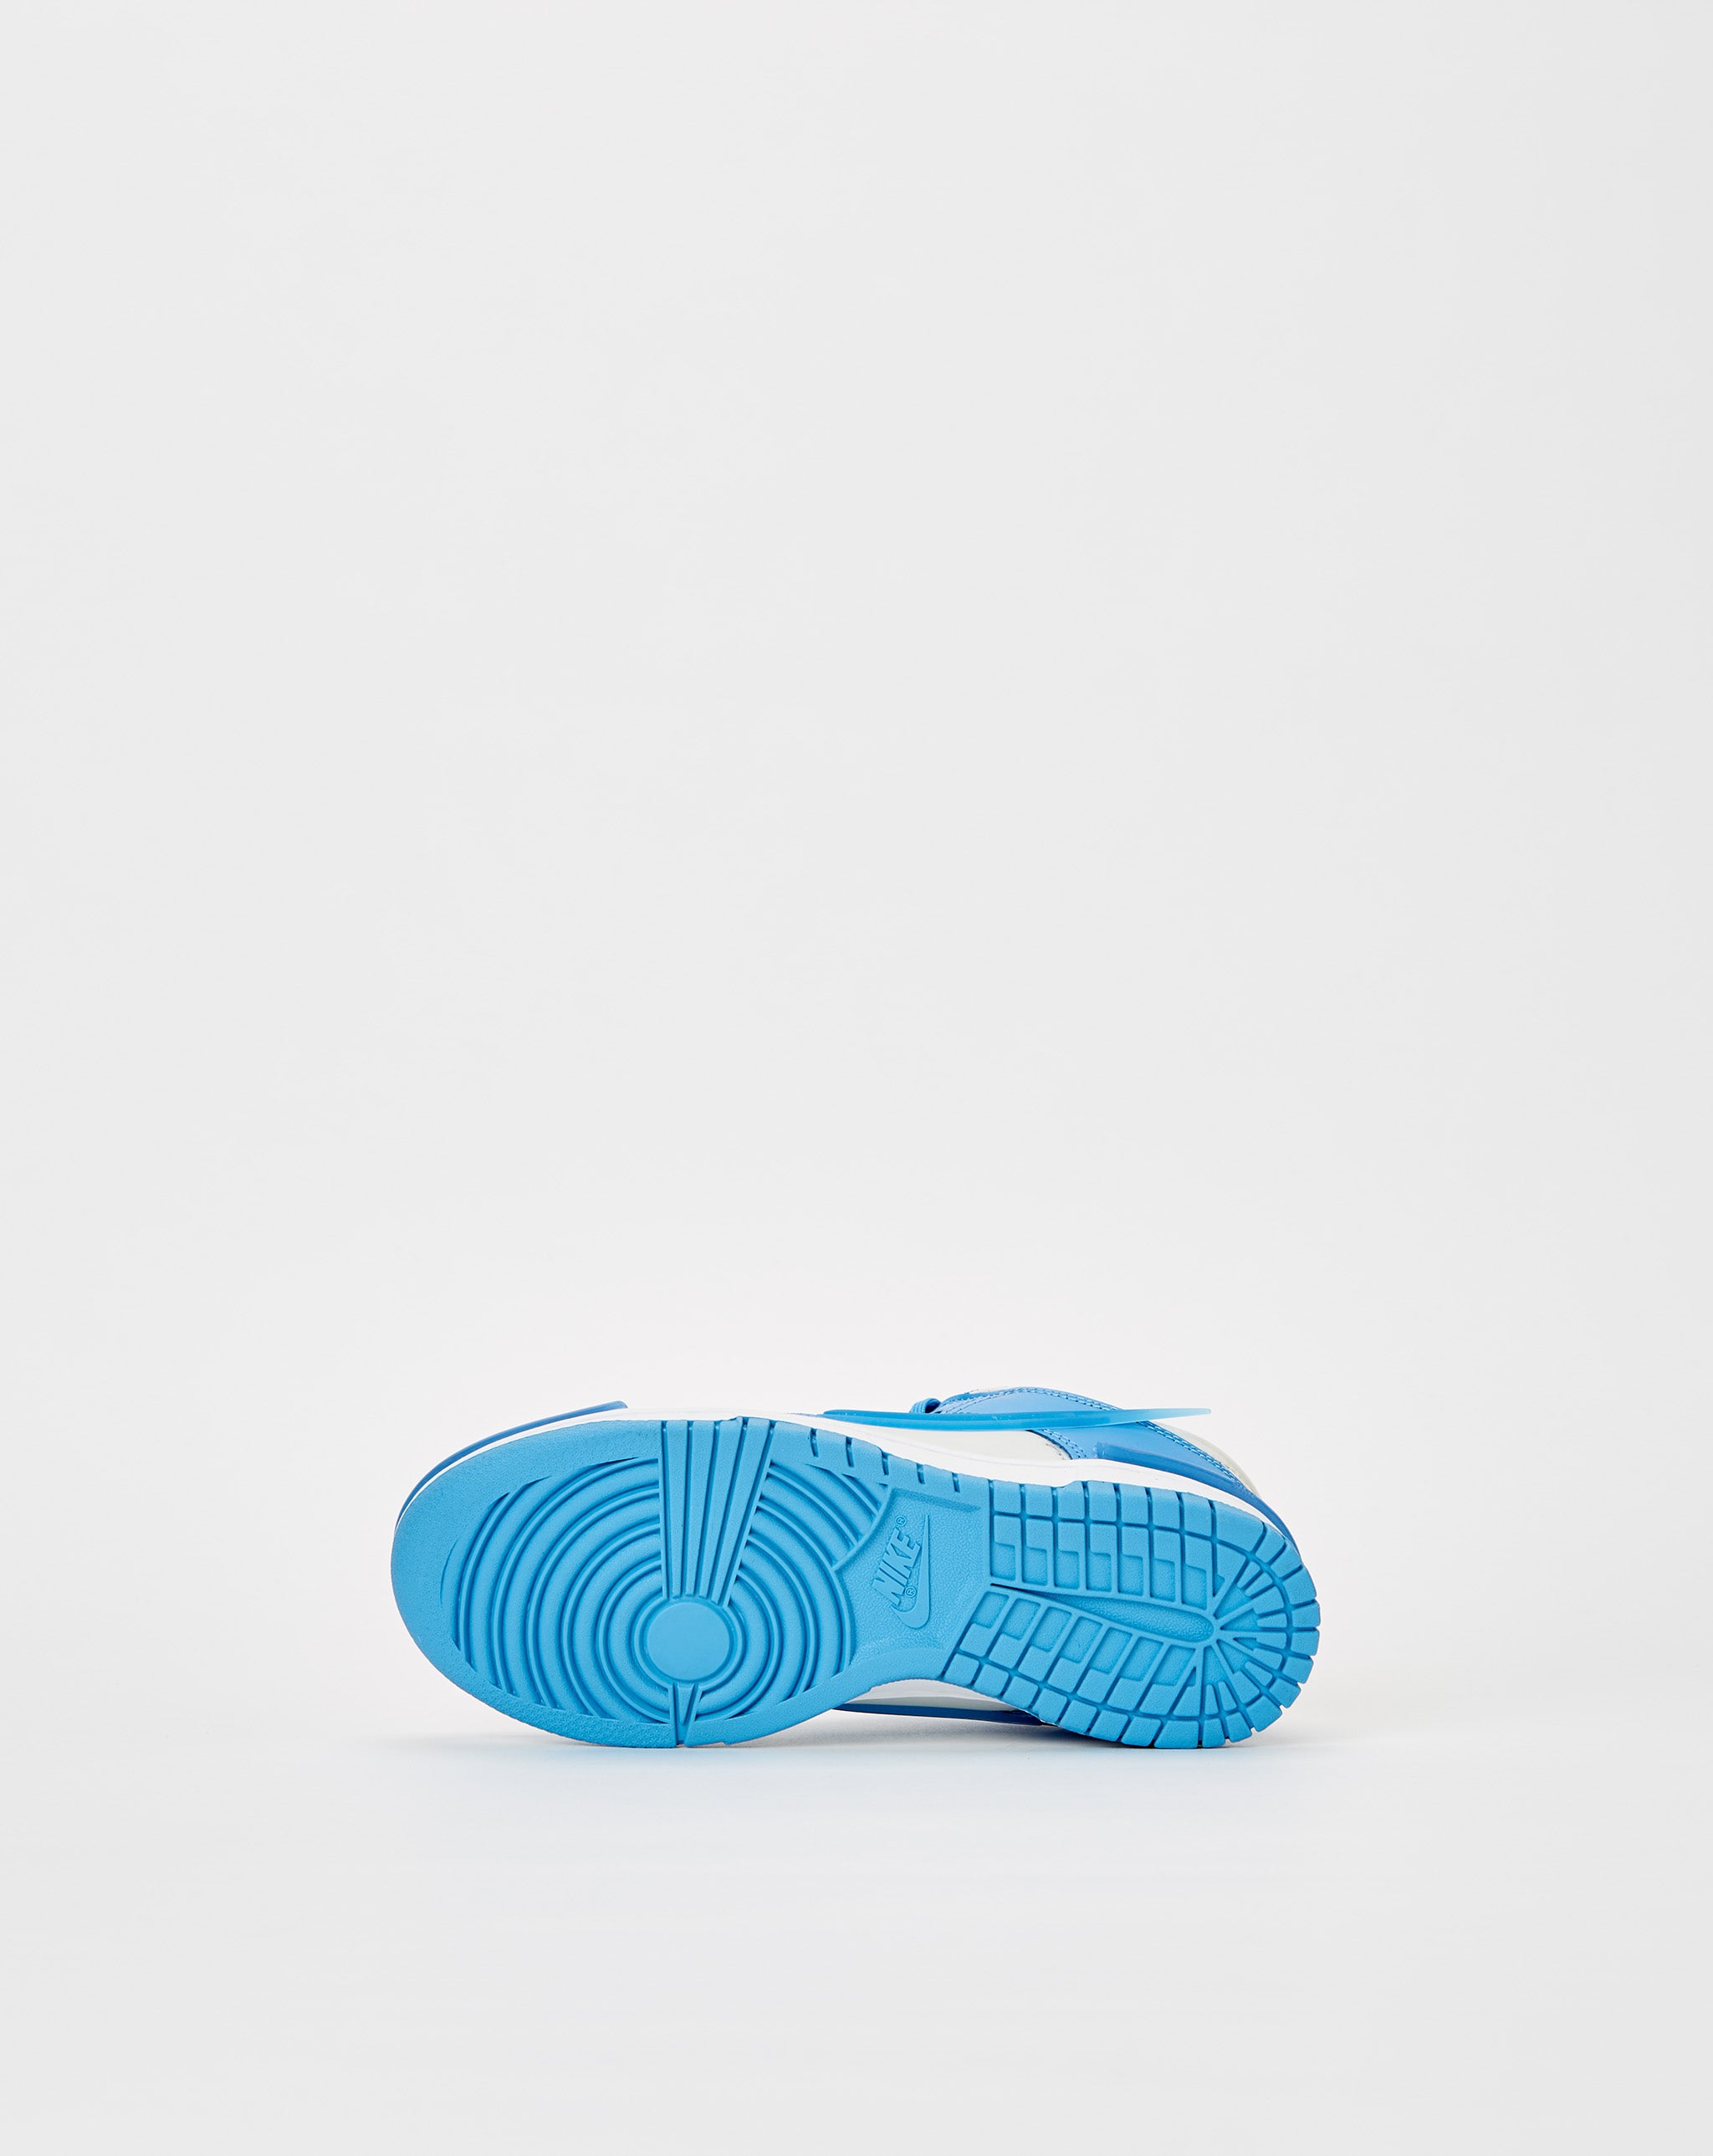 Nike goat nike huarache sandals for women shoes  - Cheap Erlebniswelt-fliegenfischen Jordan outlet